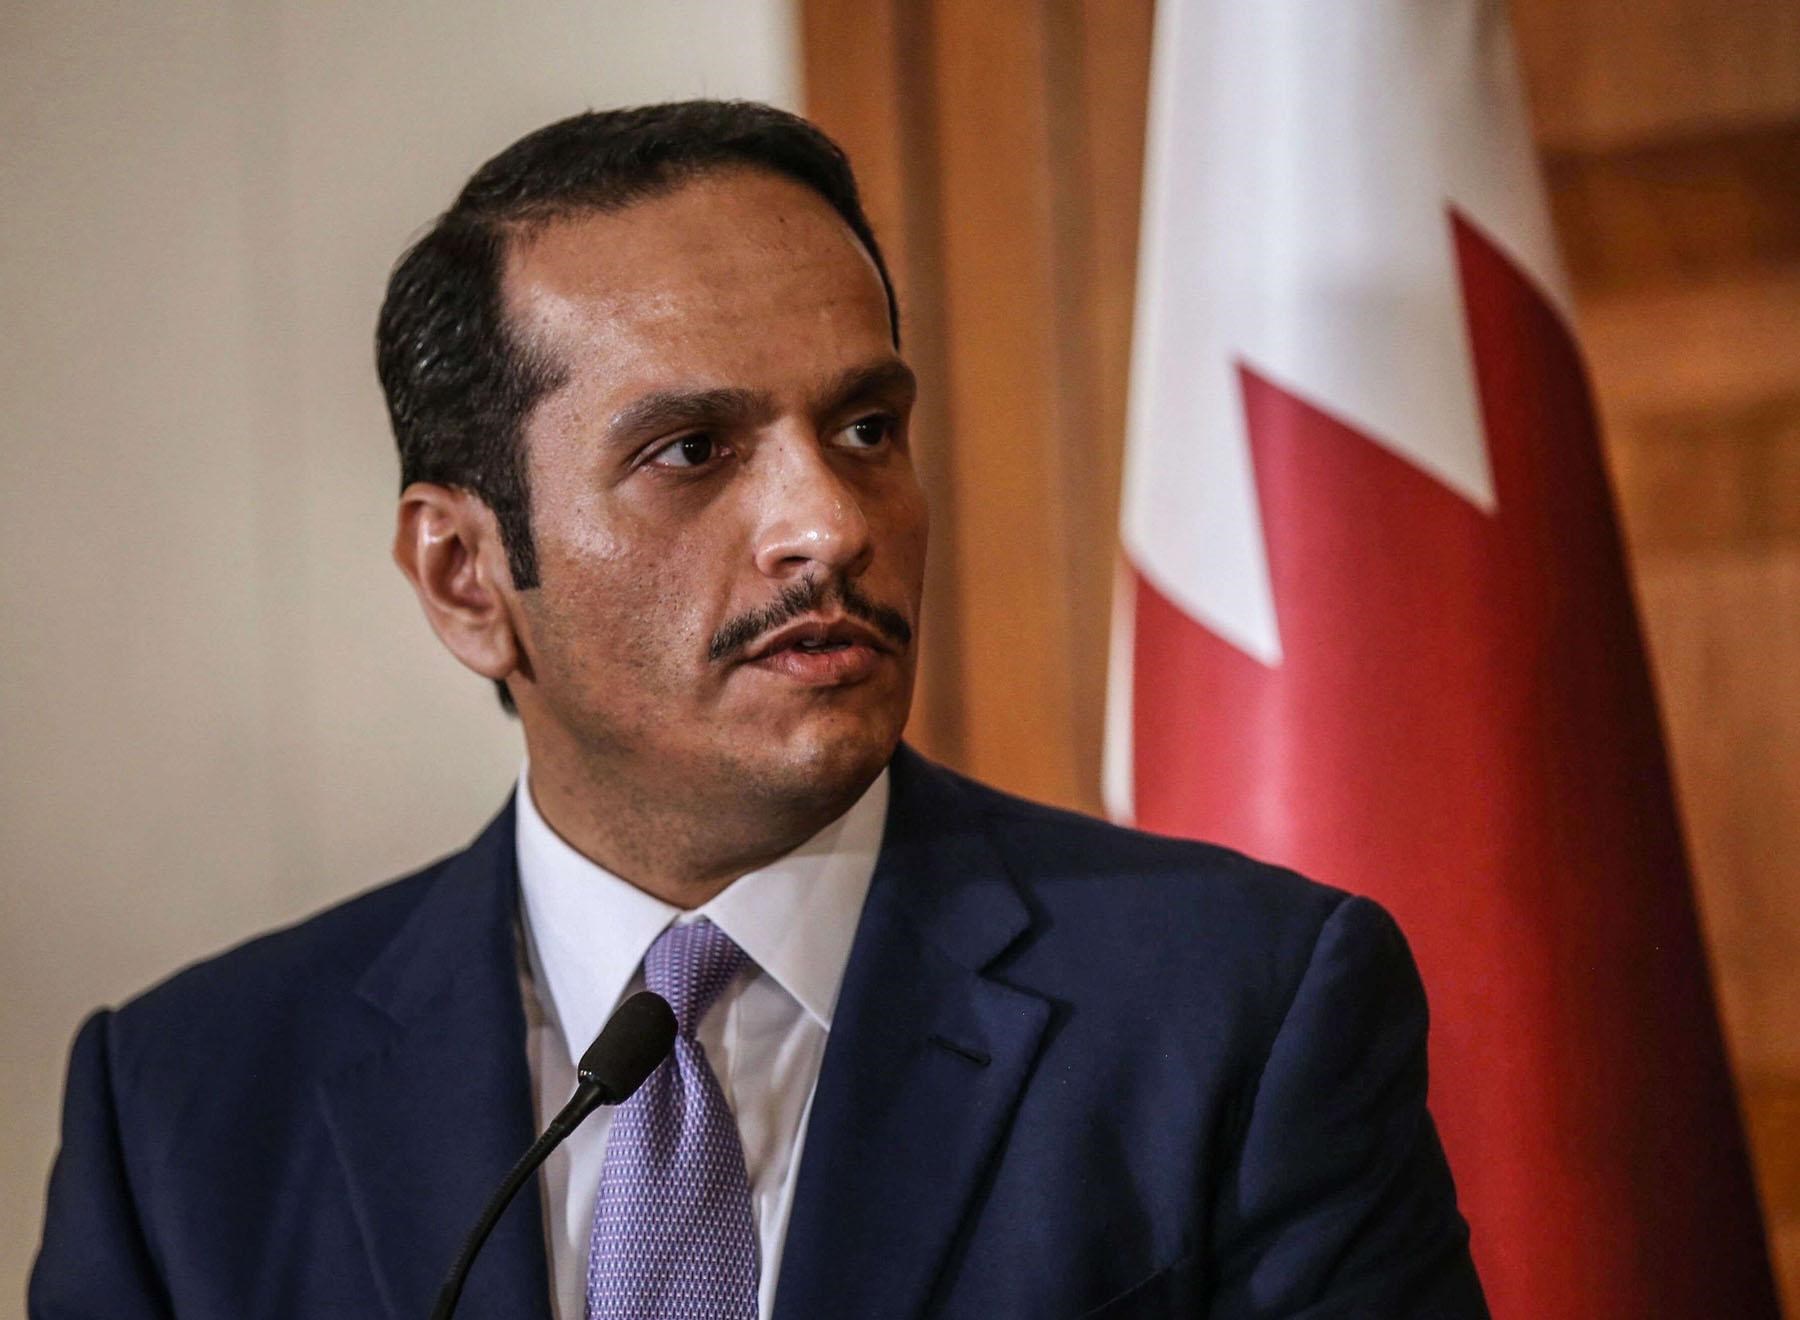 وزير خارجية قطر يبحث مستجدات الشرق الأوسط مع كبار المسؤولين بالولايات المتحدة